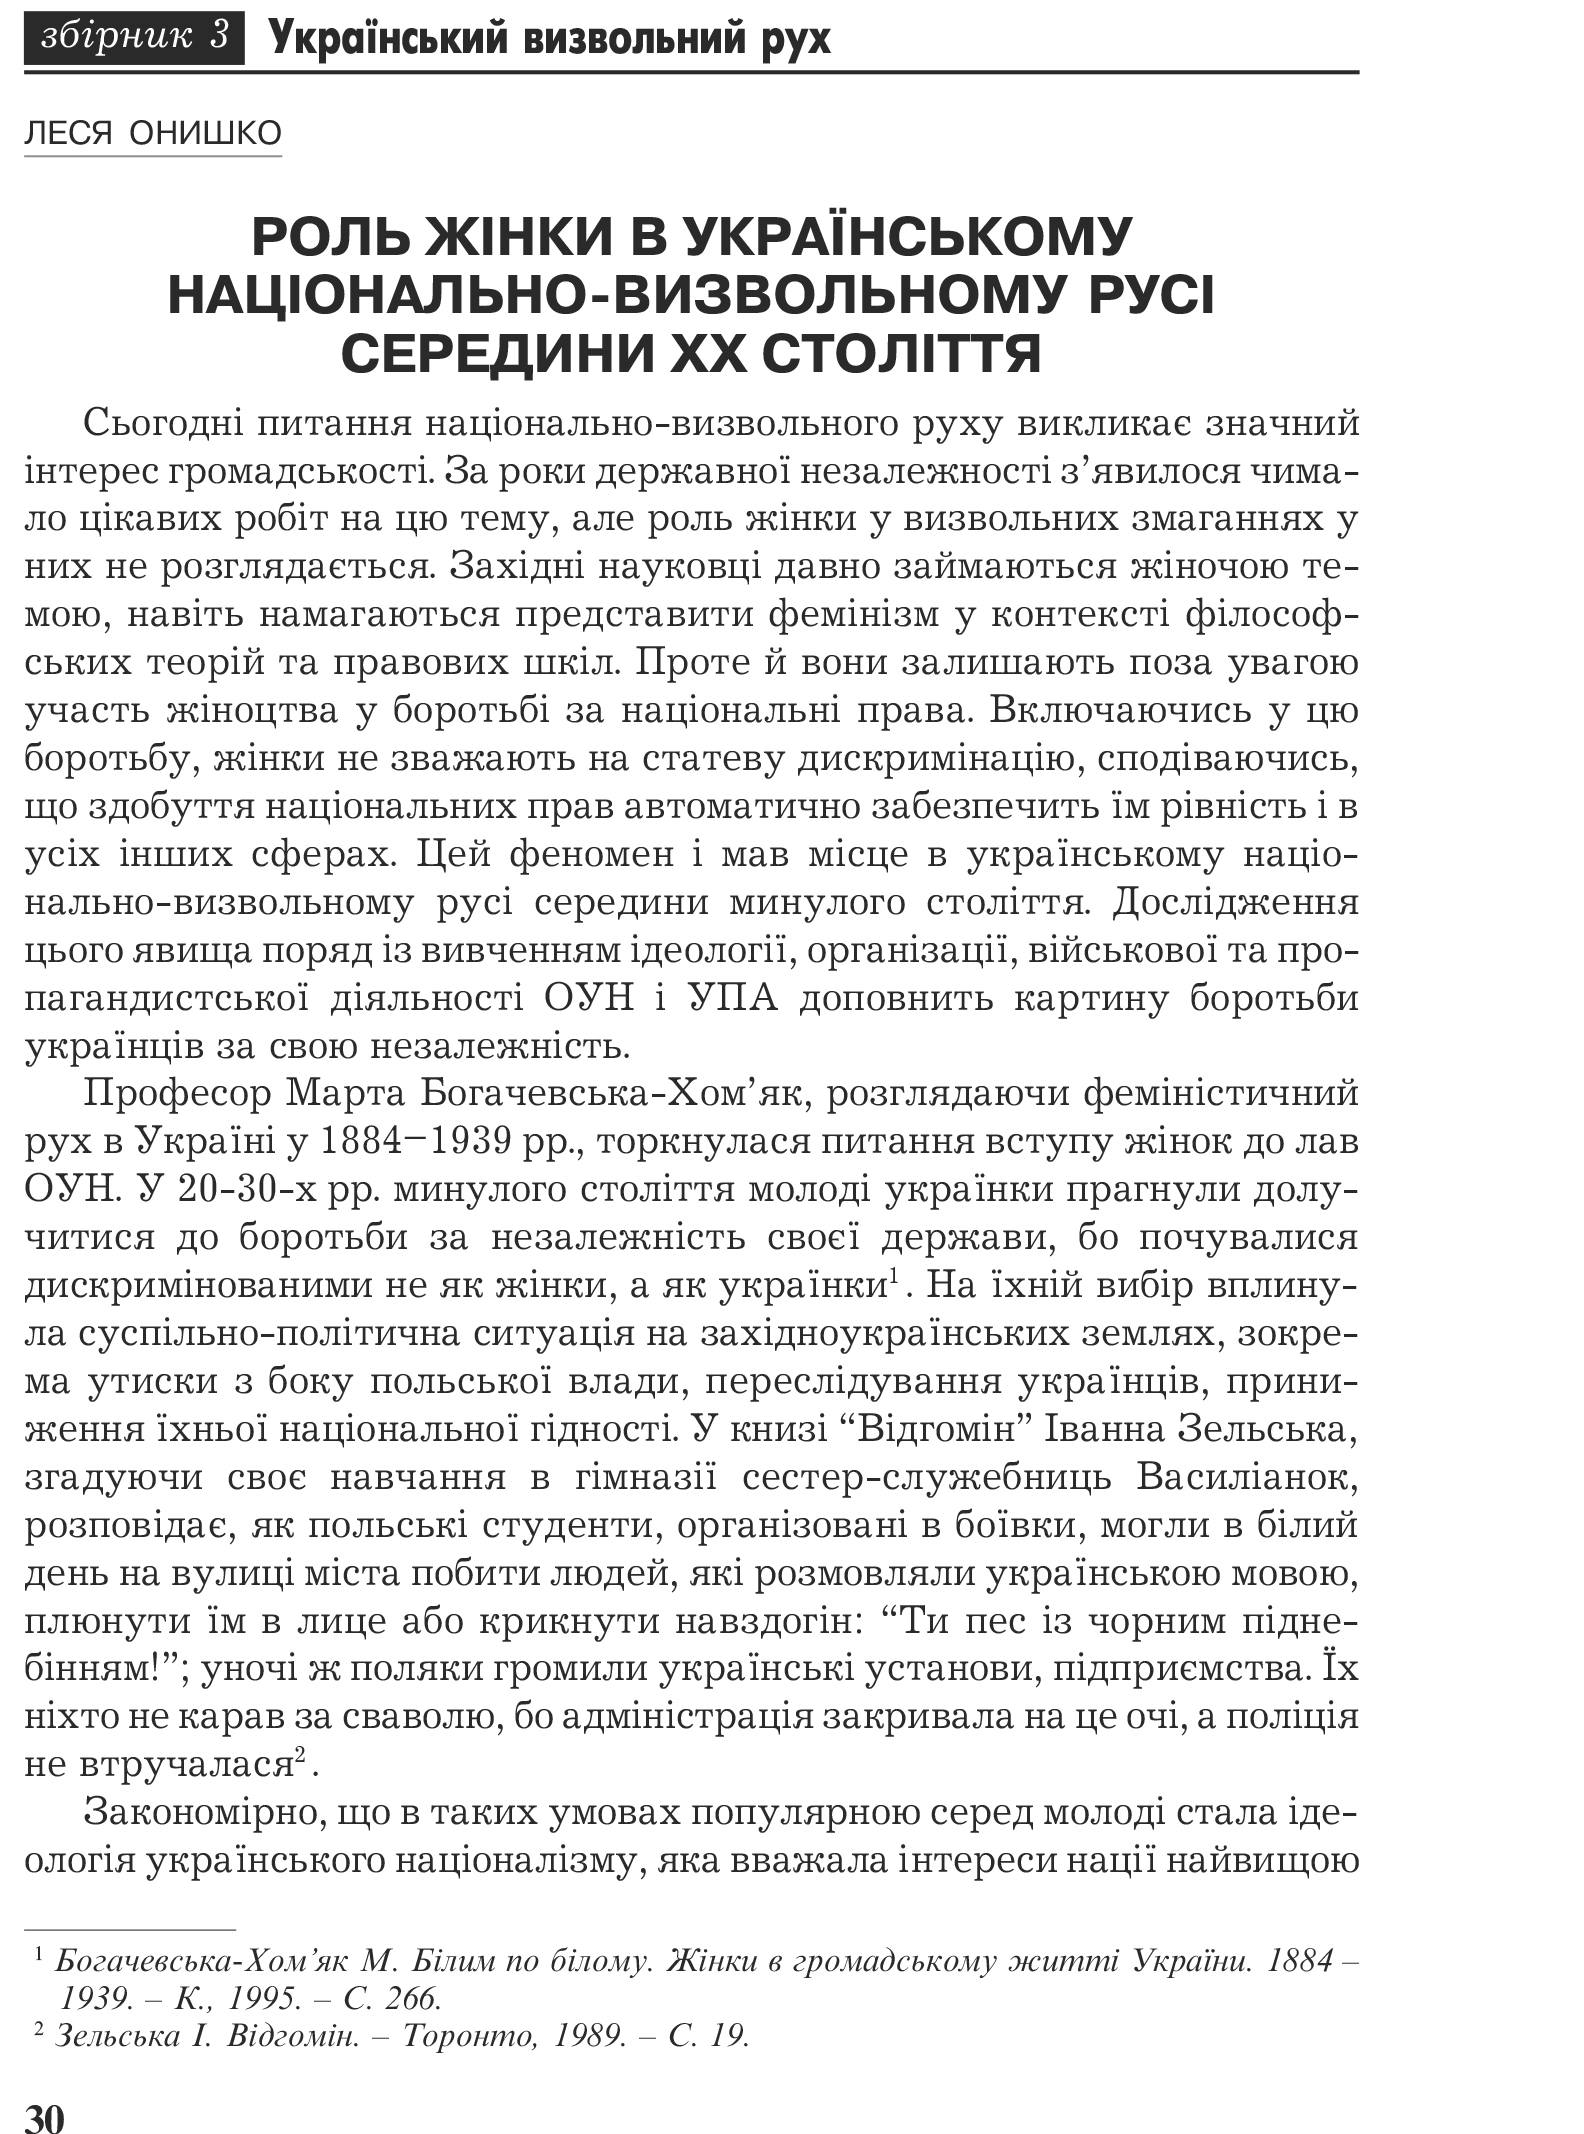 Український визвольний рух №3, ст. 30 - 38